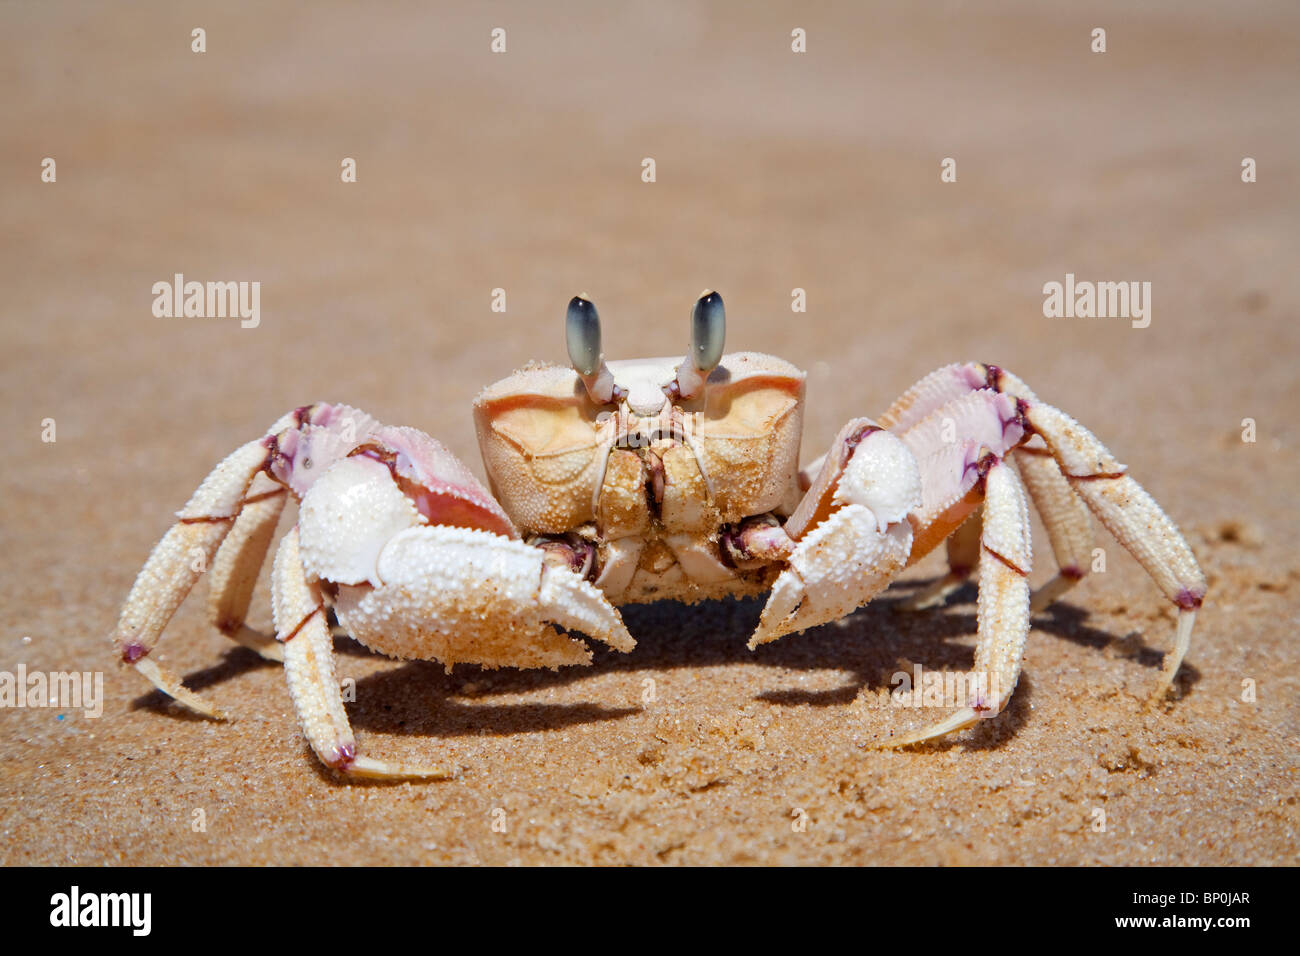 Mozambique, Bazaruto Archipelago. A Ghost Crab. Stock Photo